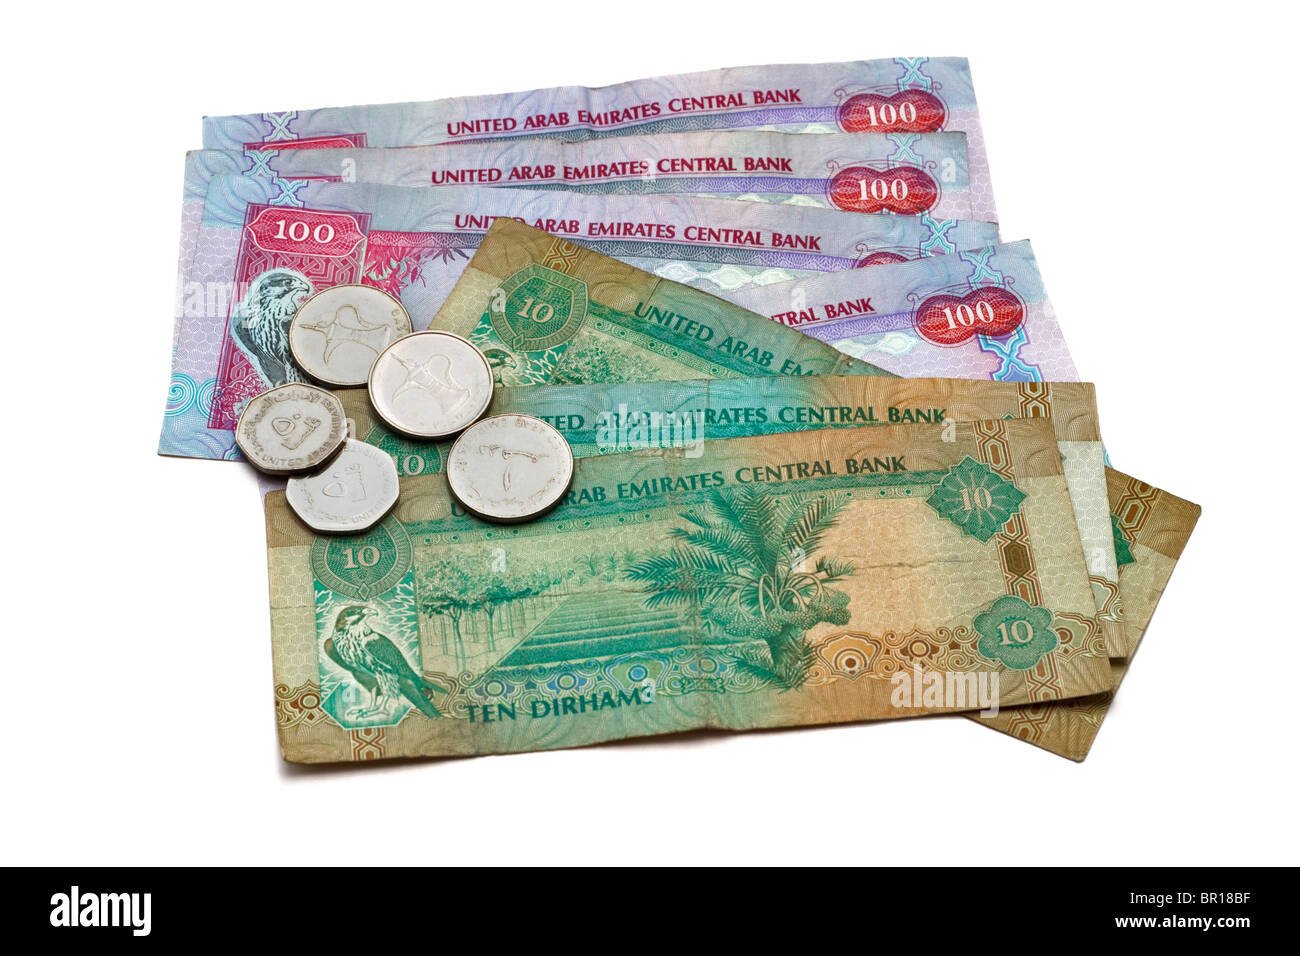 United Arab Emirates Money Stock Photo